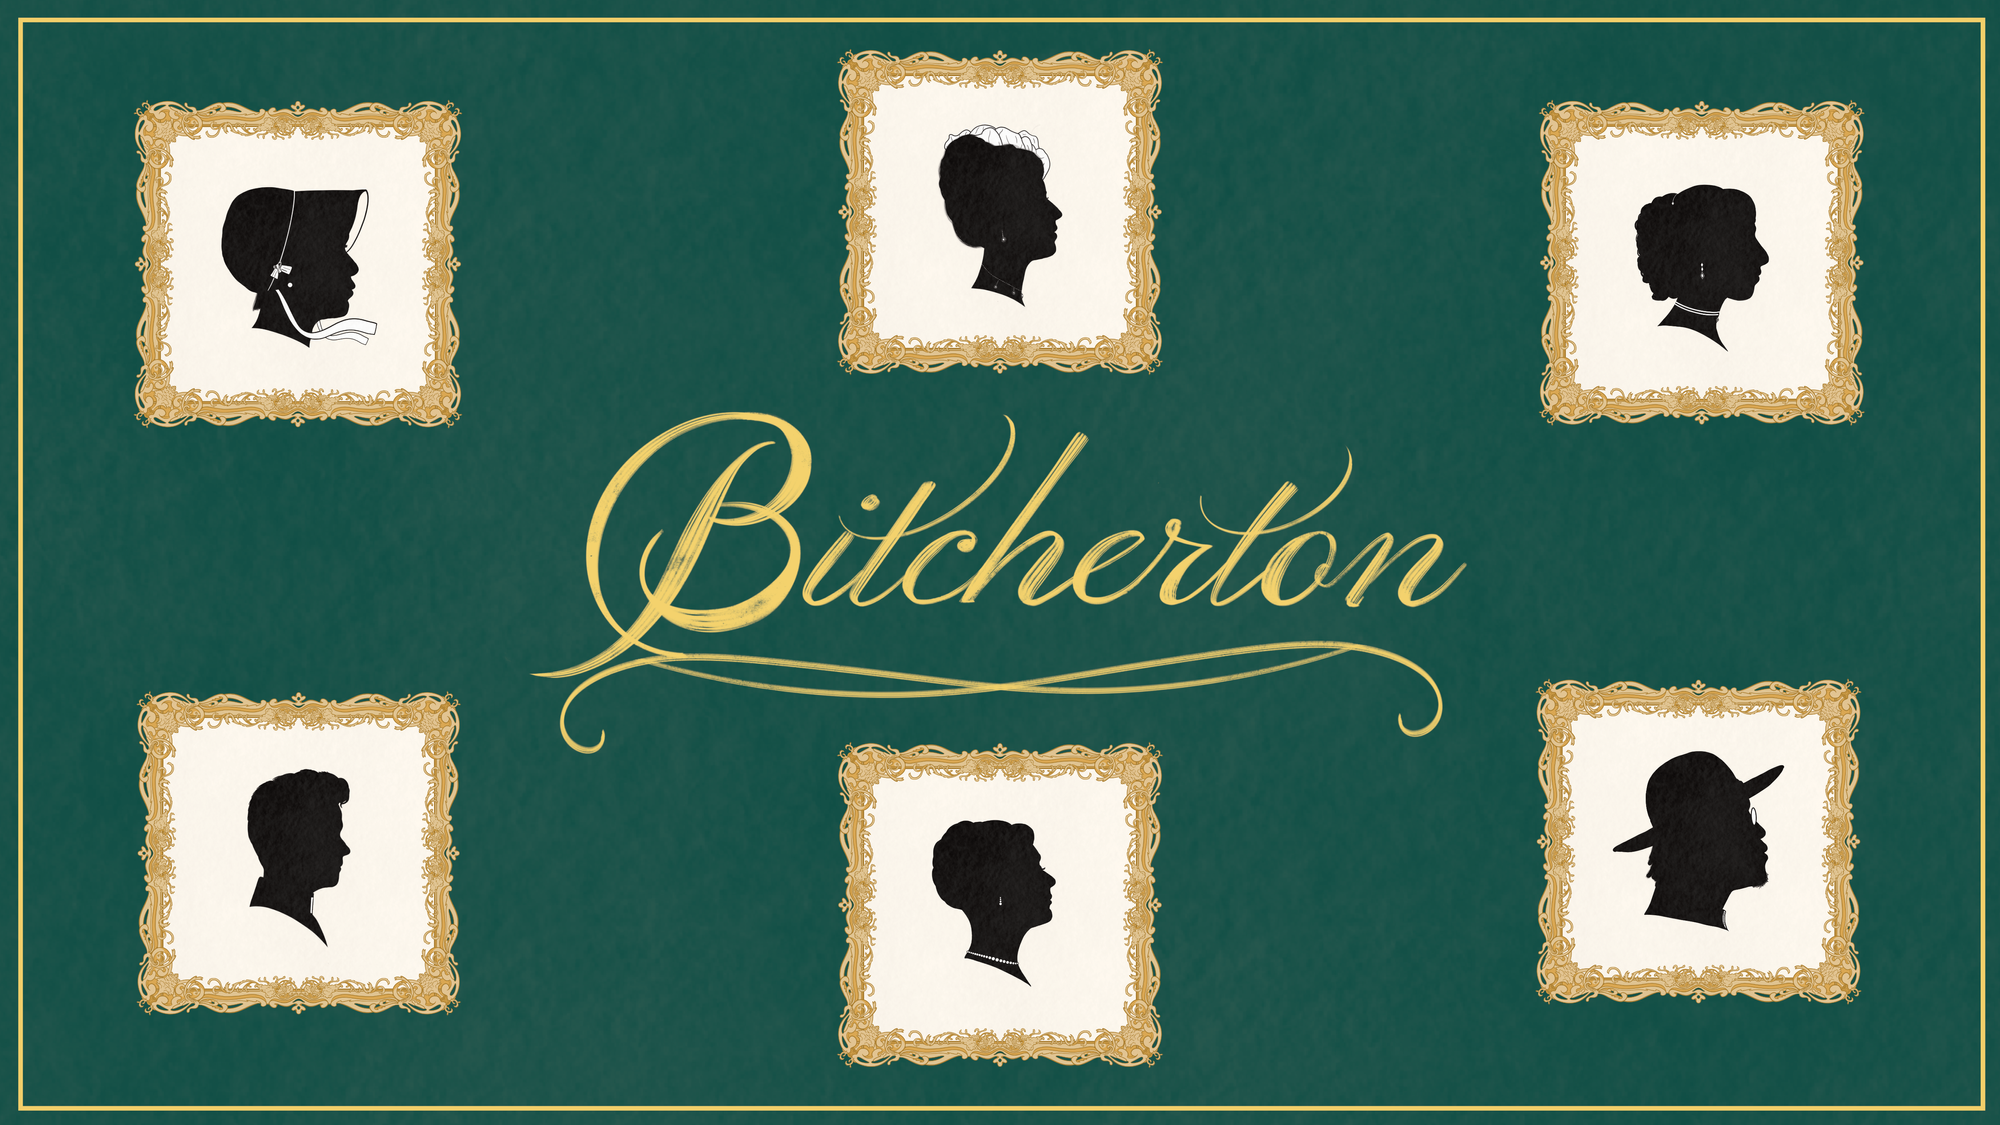 Meet the Bitchertons: Your New Favorite Regency Family